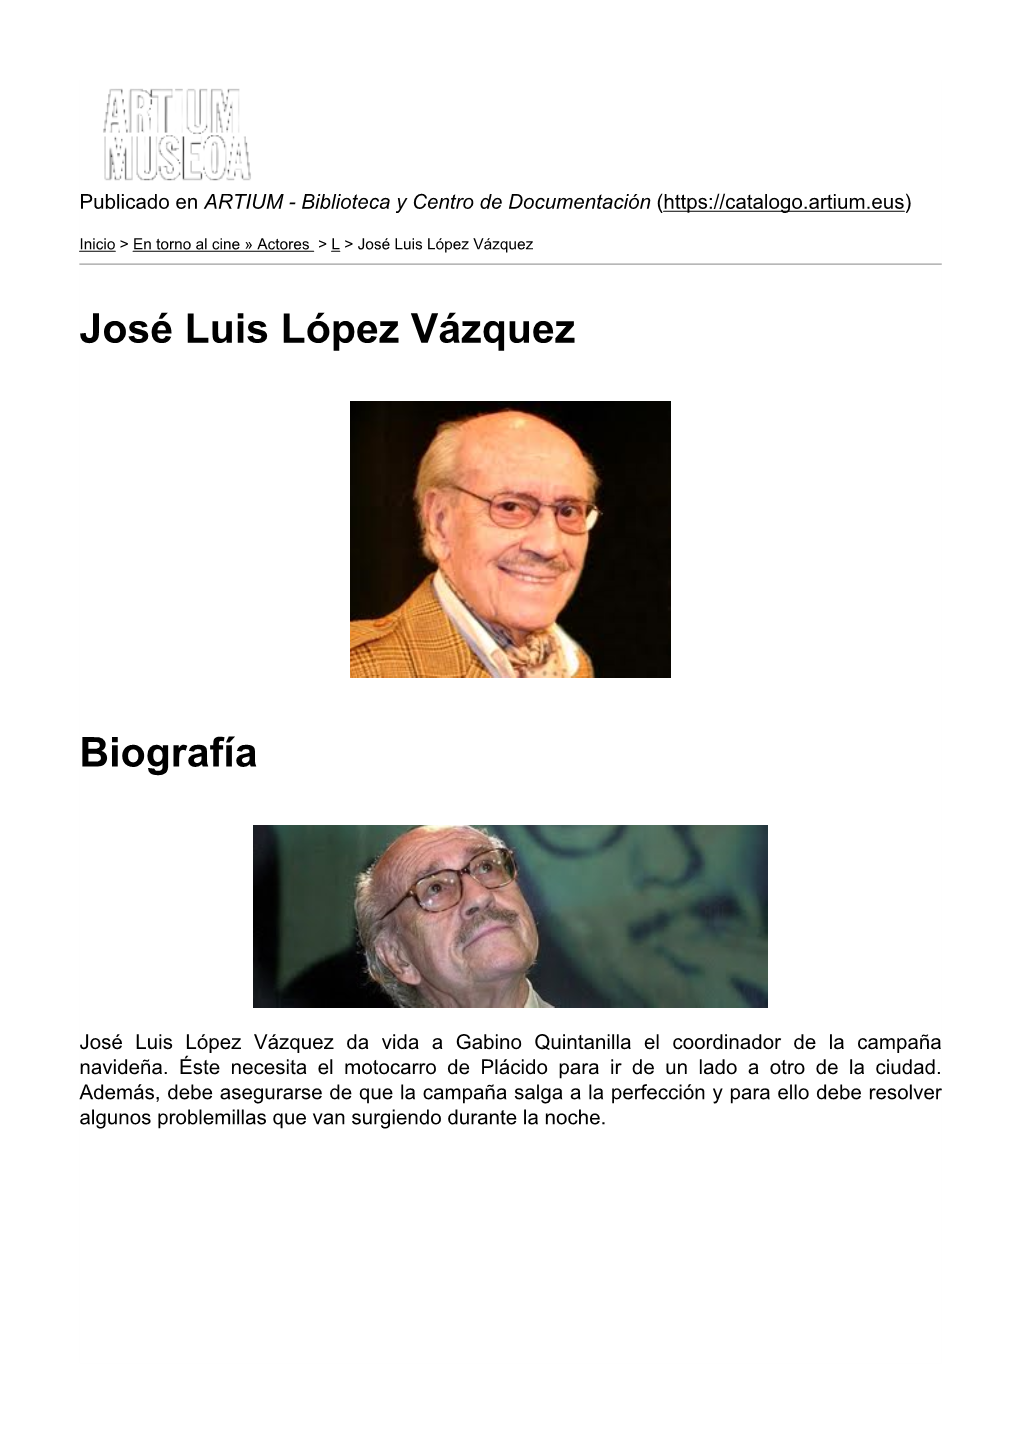 José Luis López Vázquez Biografía